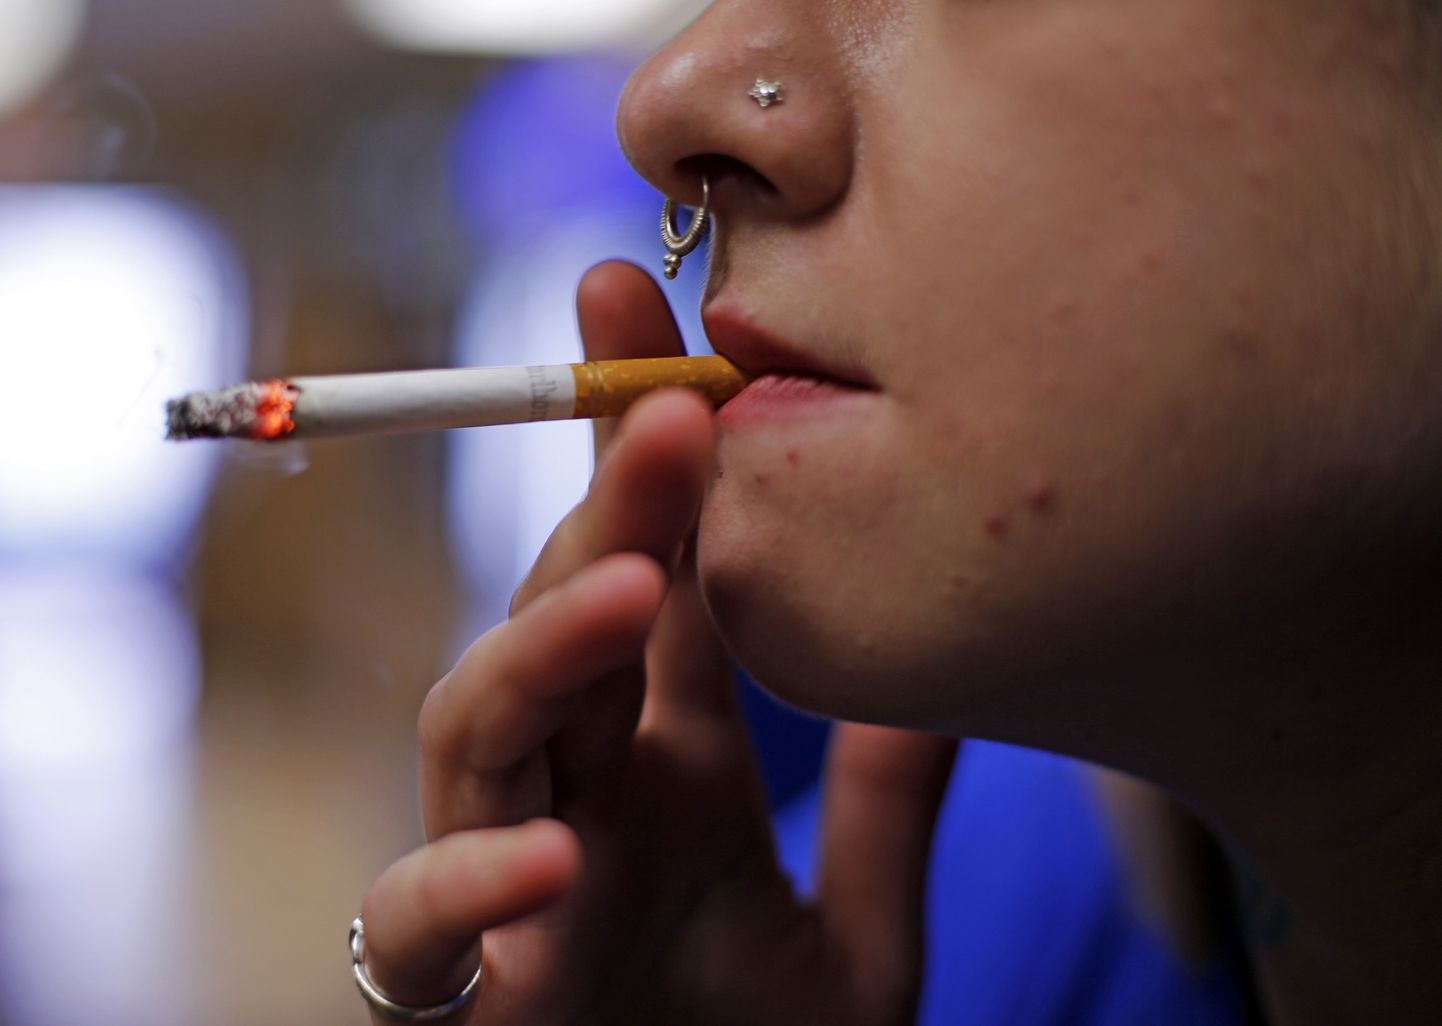 Keskmiselt proovivad lapsed Eestis suitsu juba 12-aastaselt.